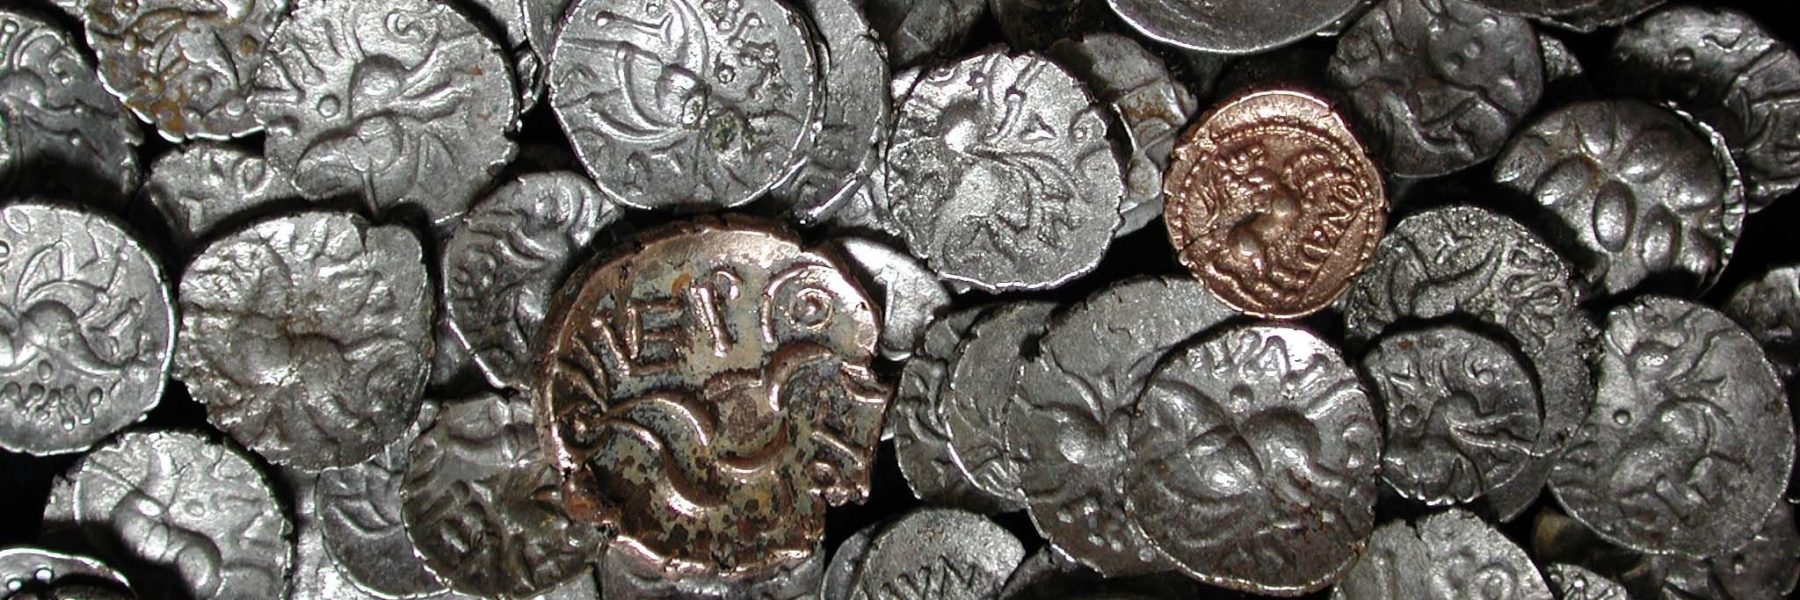 Coins From The Hallaton Treasure Aspect Ratio 1800 600